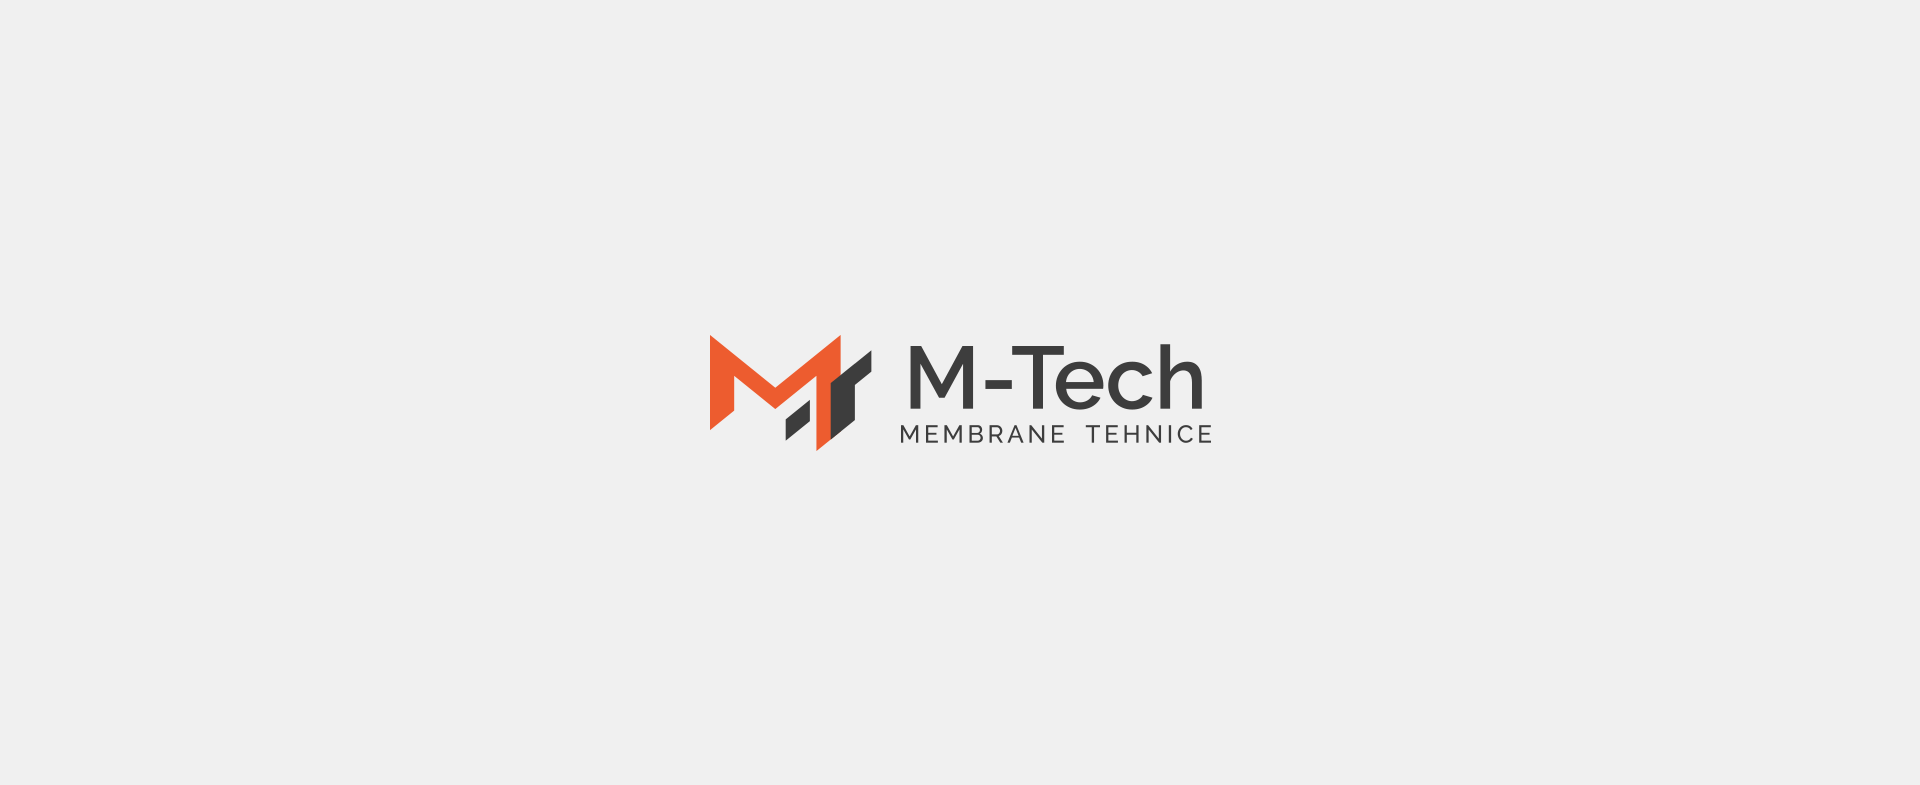 M.Tech Logo - M-Tech « INK9 Creative Agency in Oradea - Branding, Web Design And ...